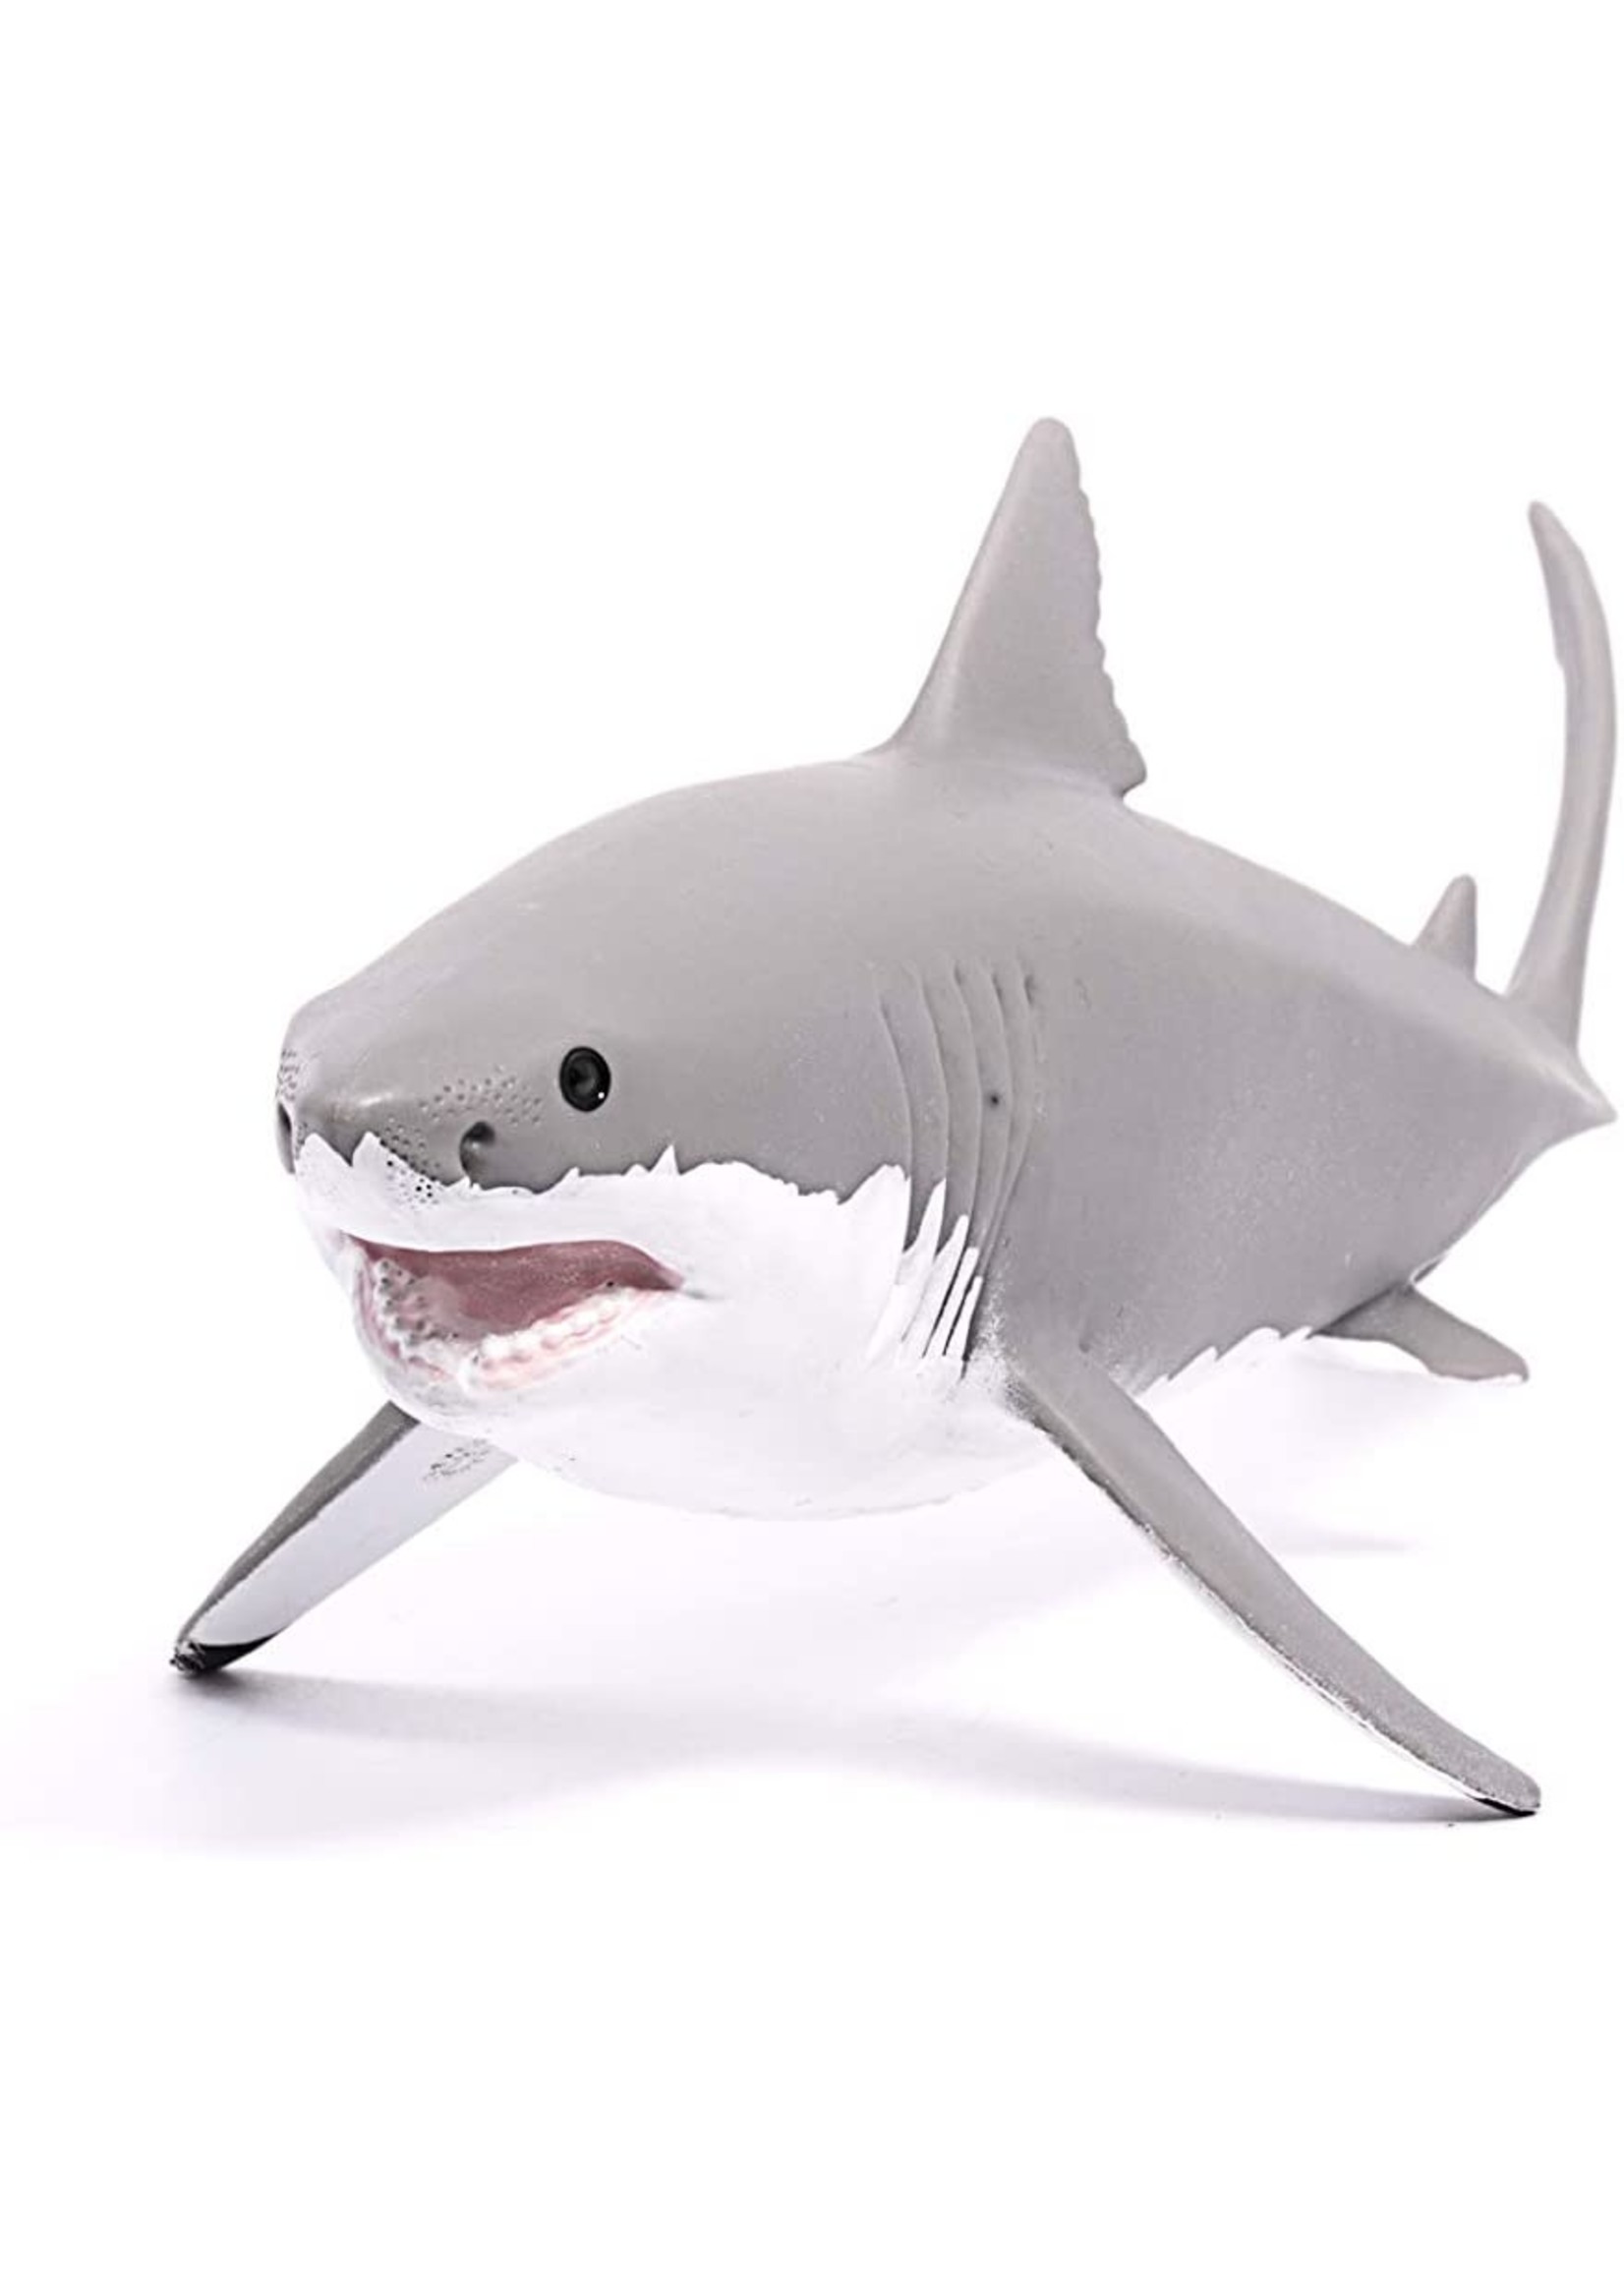 Schleich 14809 - Great White Shark